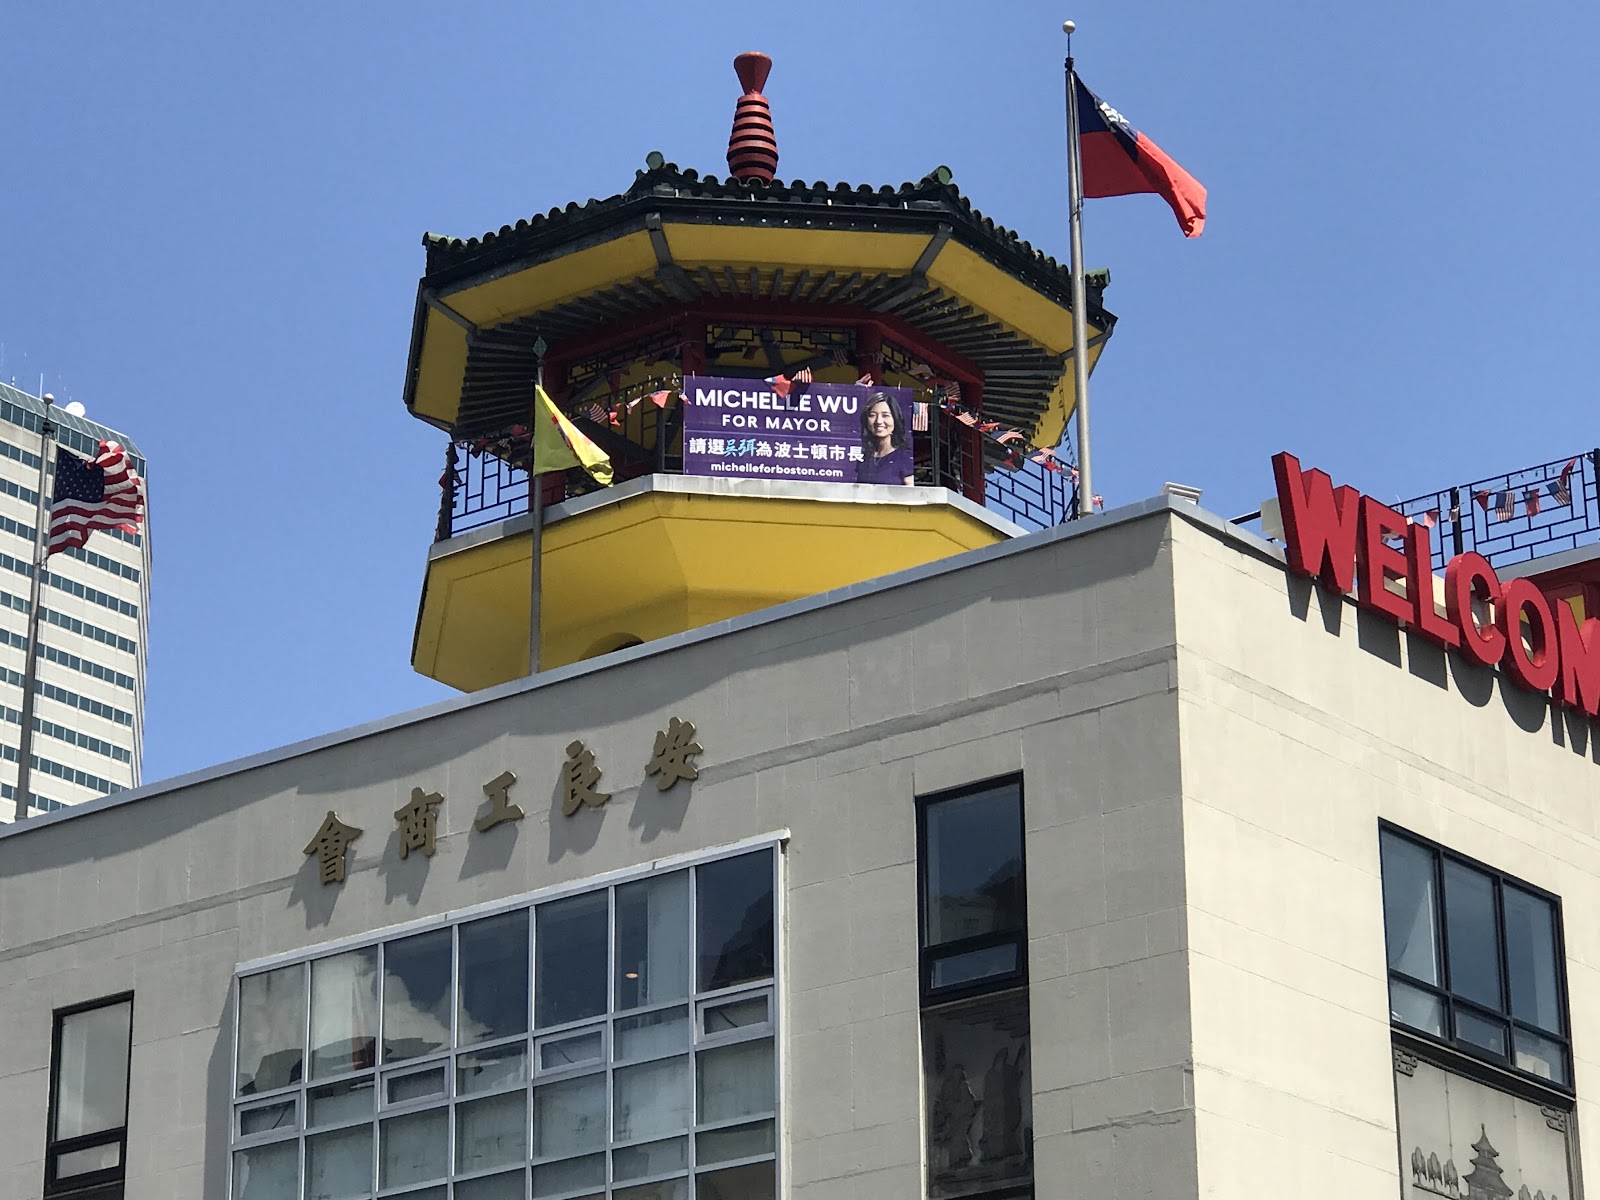 吴弭竞选市长获得麻州众议员支持 海报悬挂唐人街高层建筑顶层阁楼